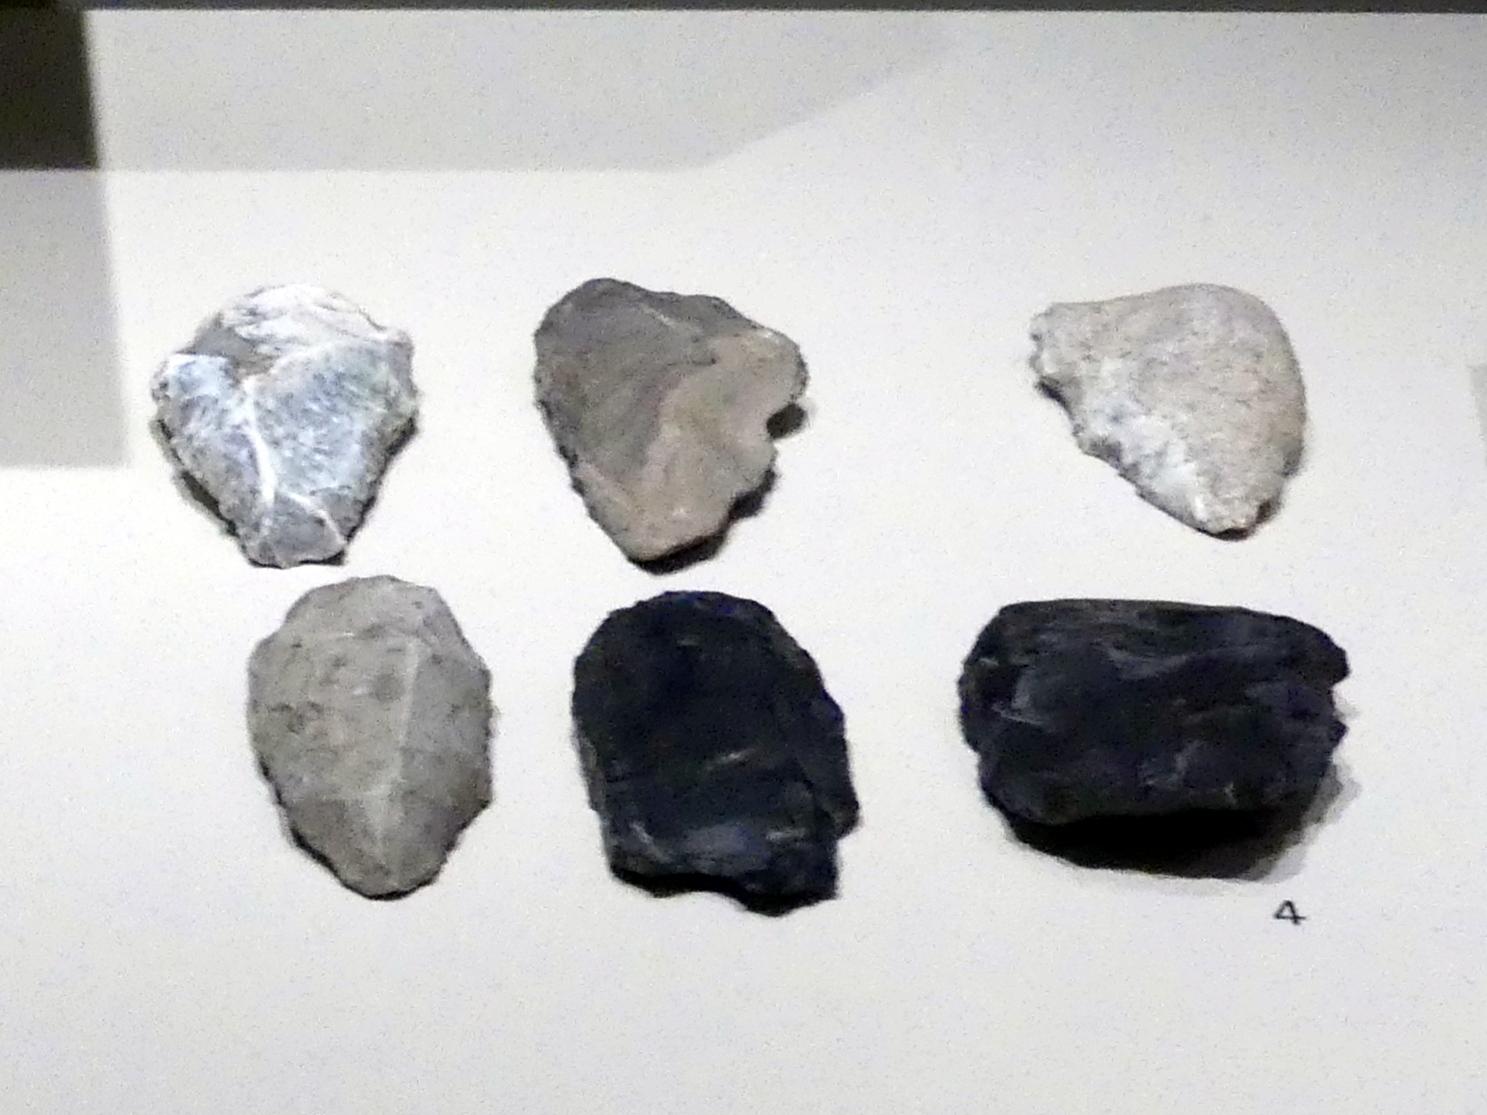 Schaber, Mittelpaläolithikum, 200000 - 31000 v. Chr., 140000 - 125000 v. Chr.